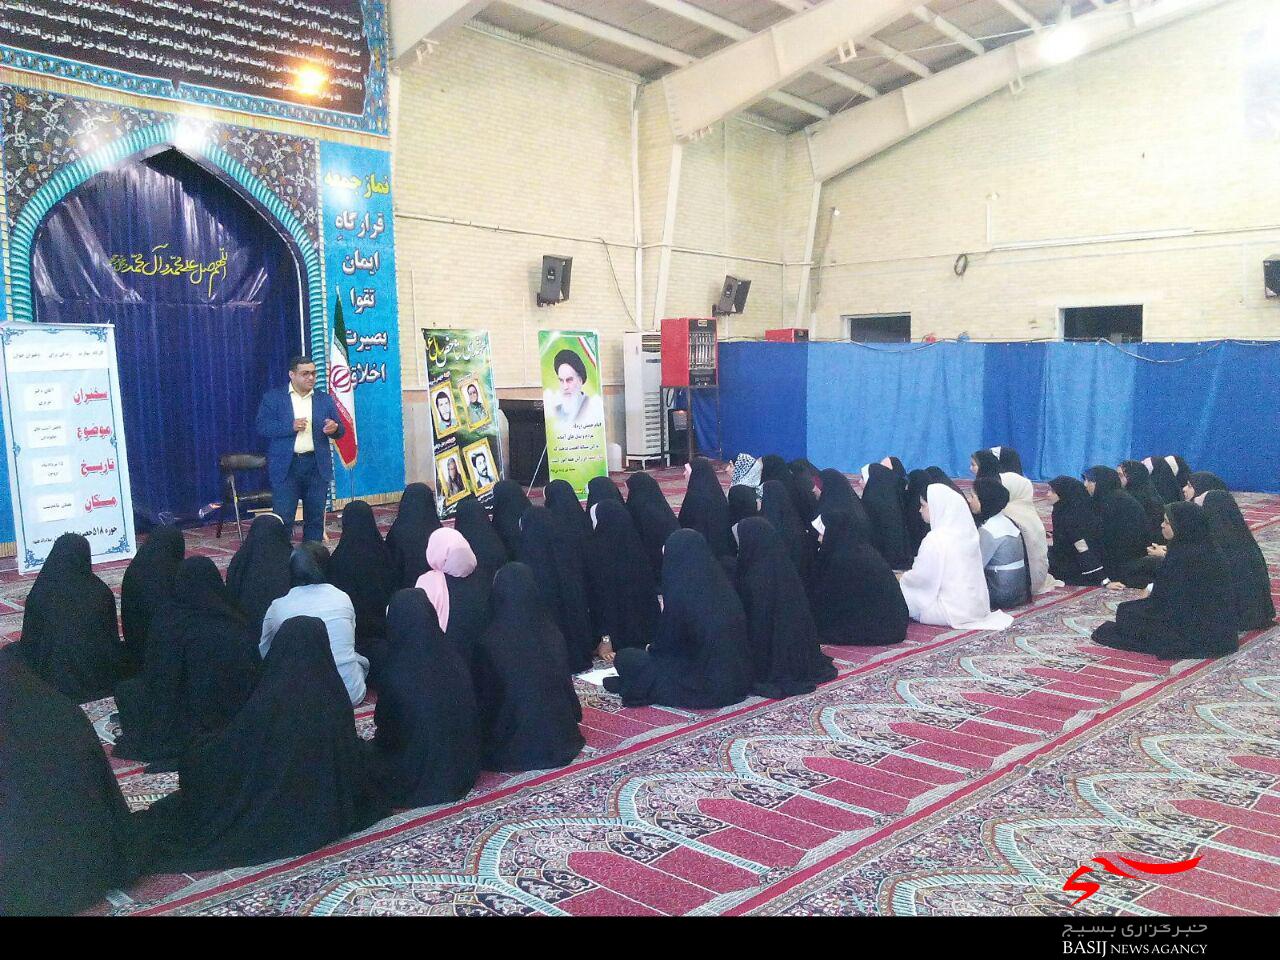 برگزاری کلاس کارگاهی دخترانه مهارت در مصلی ماهدشت